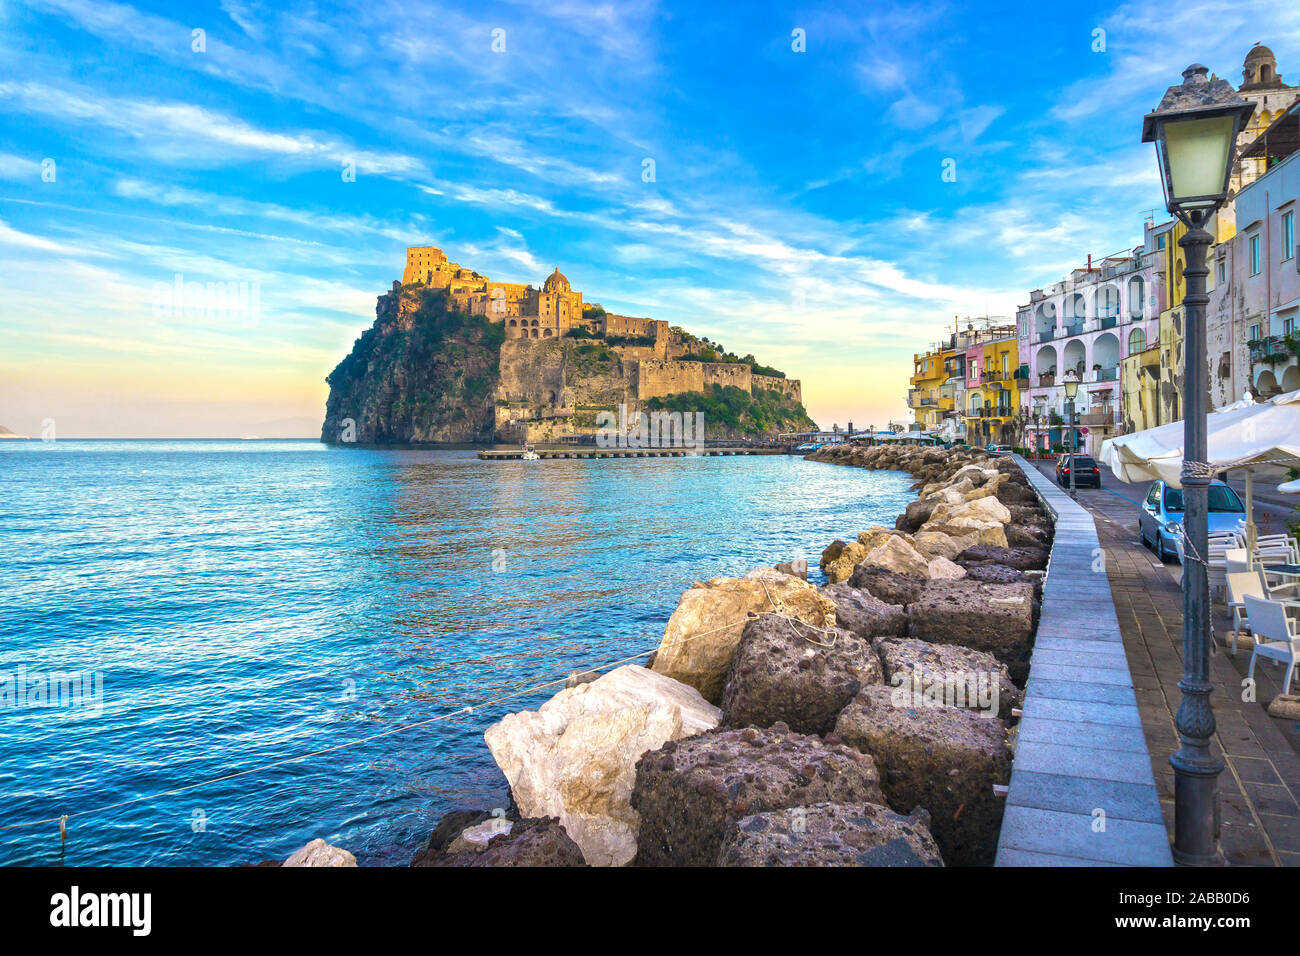 Isola di Ischia e aragonesi il castello medievale o Ischia Ponte. Destinazione di viaggio vicino a Napoli in Campania, Italia. L'Europa. Foto Stock